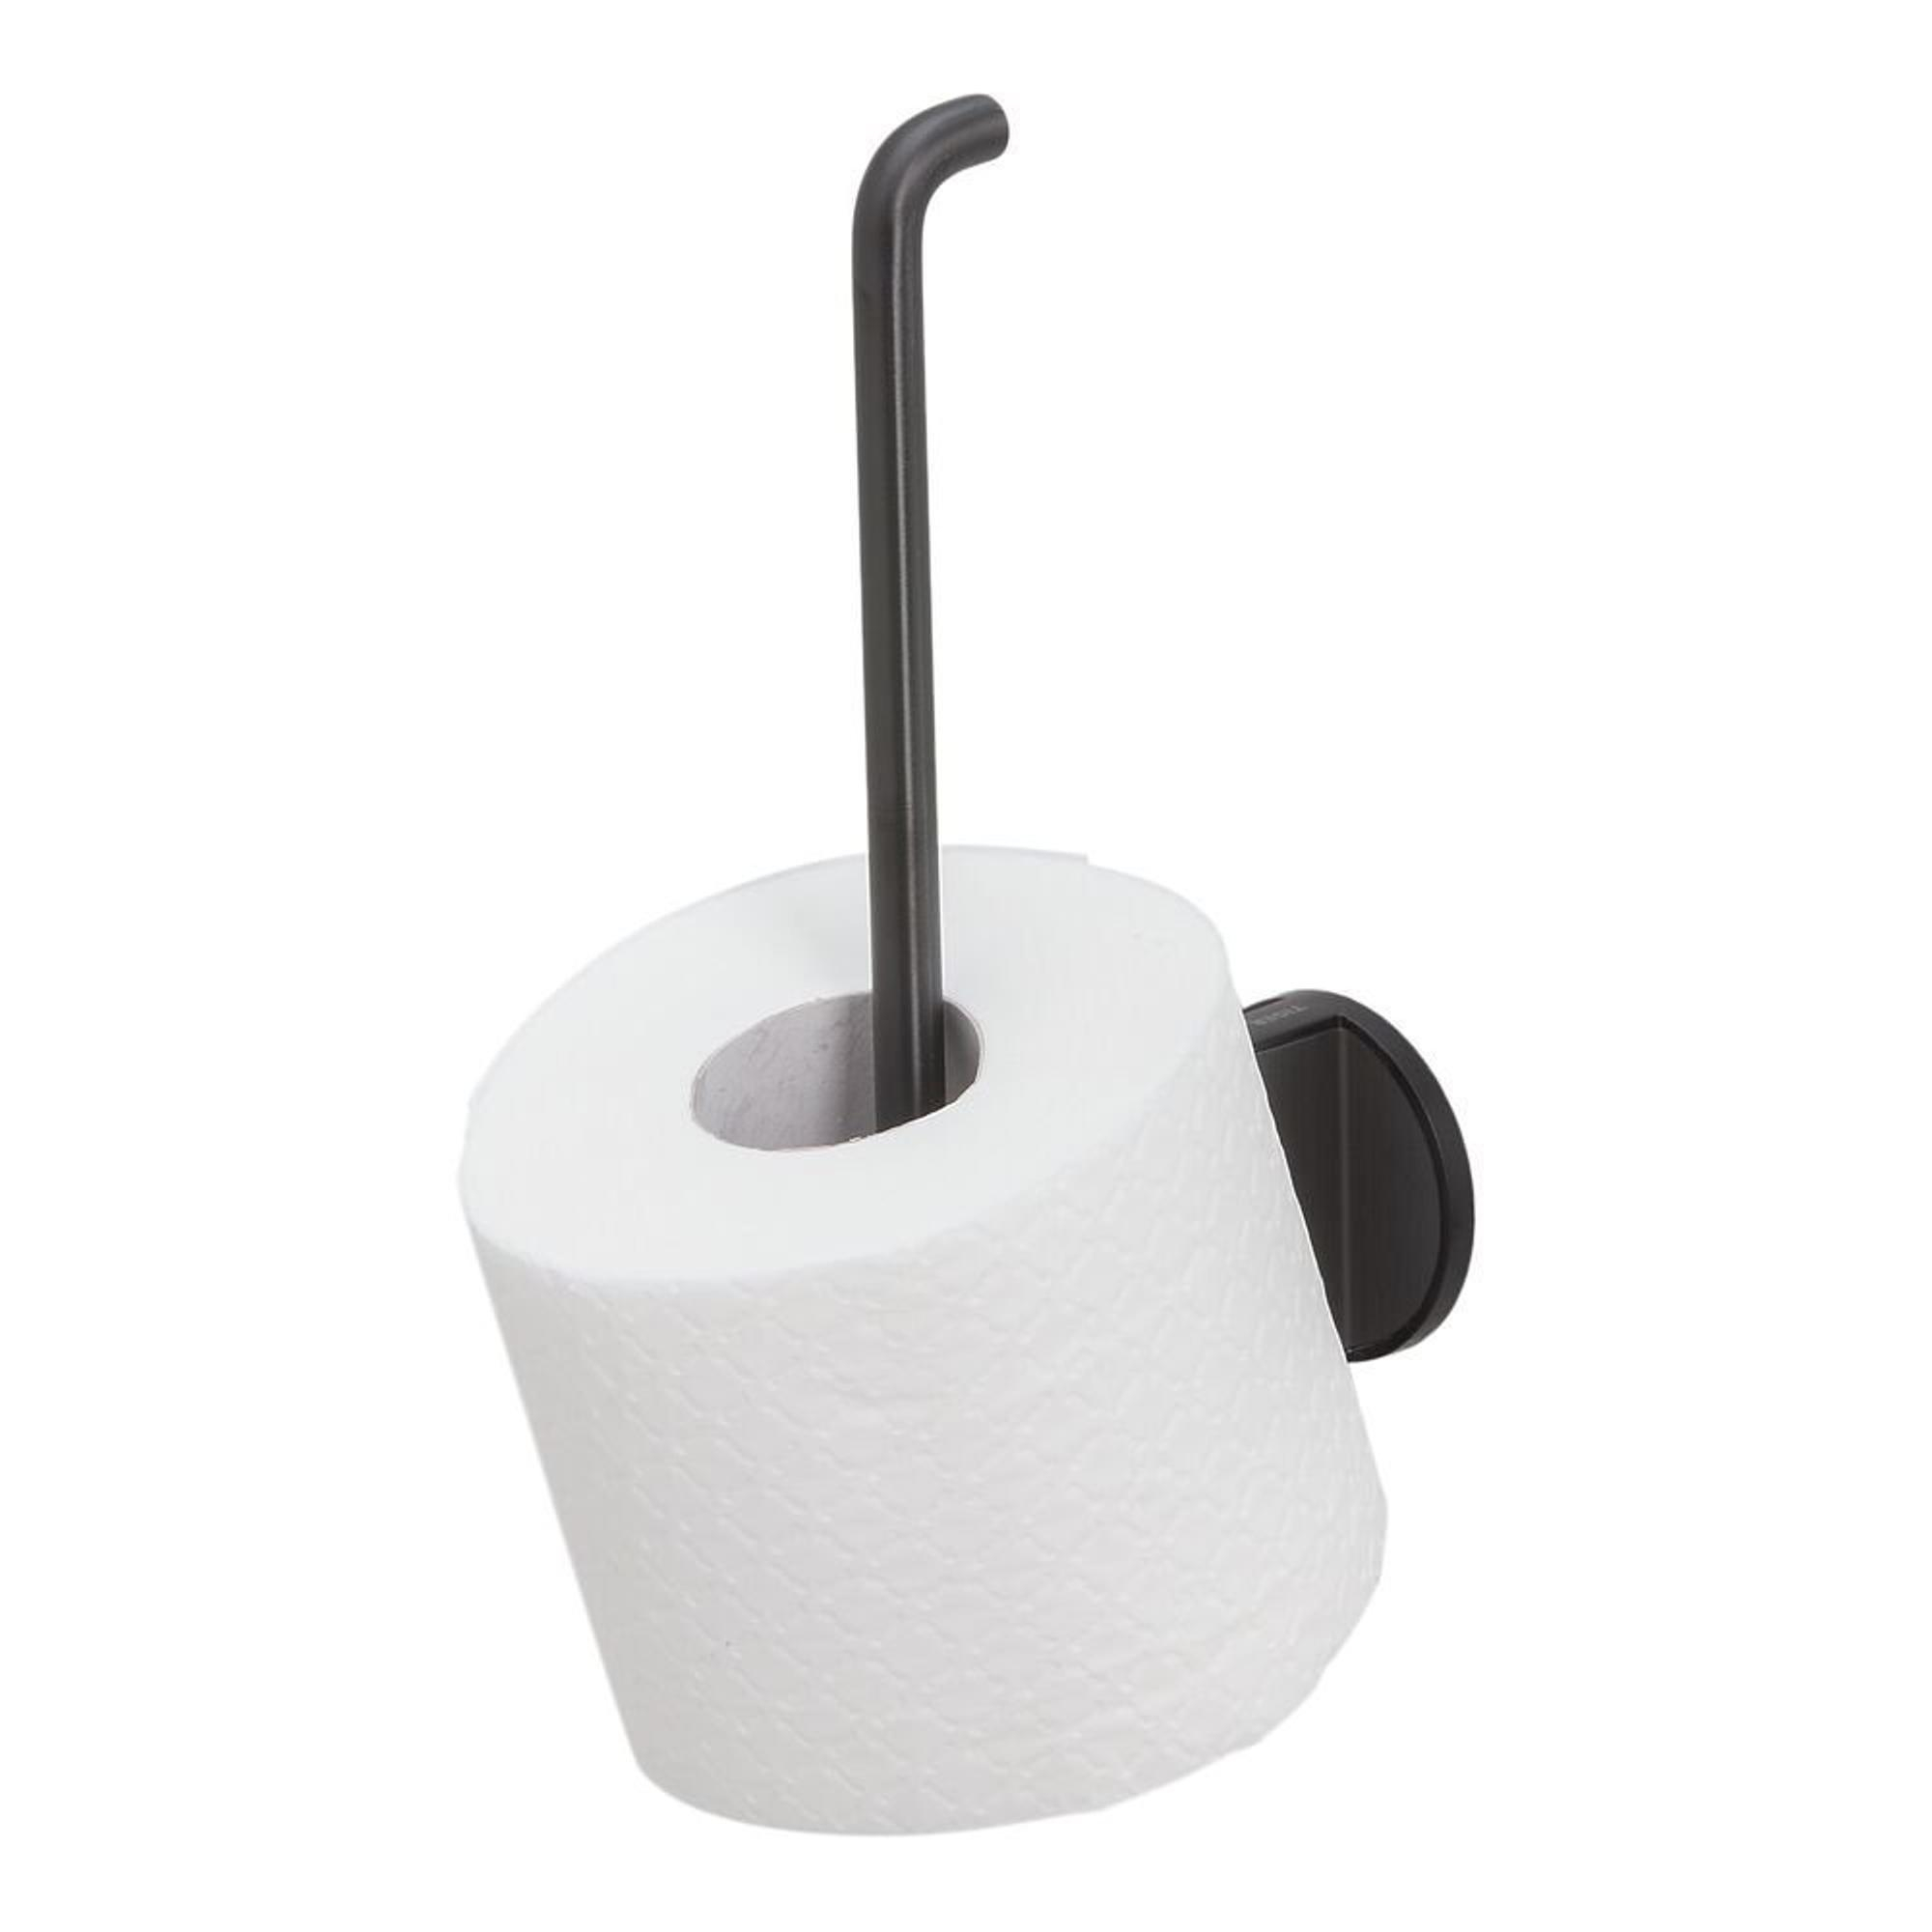 https://static.rorix.nl/image/product/overig/2000x2000/e4a97aa4b4f2d46611942e15589f5658.jpg/tiger-tune-porte-rouleaux-papier-toilette-de-reserve-metal-brosse-noir-noir-sw296110.jpg